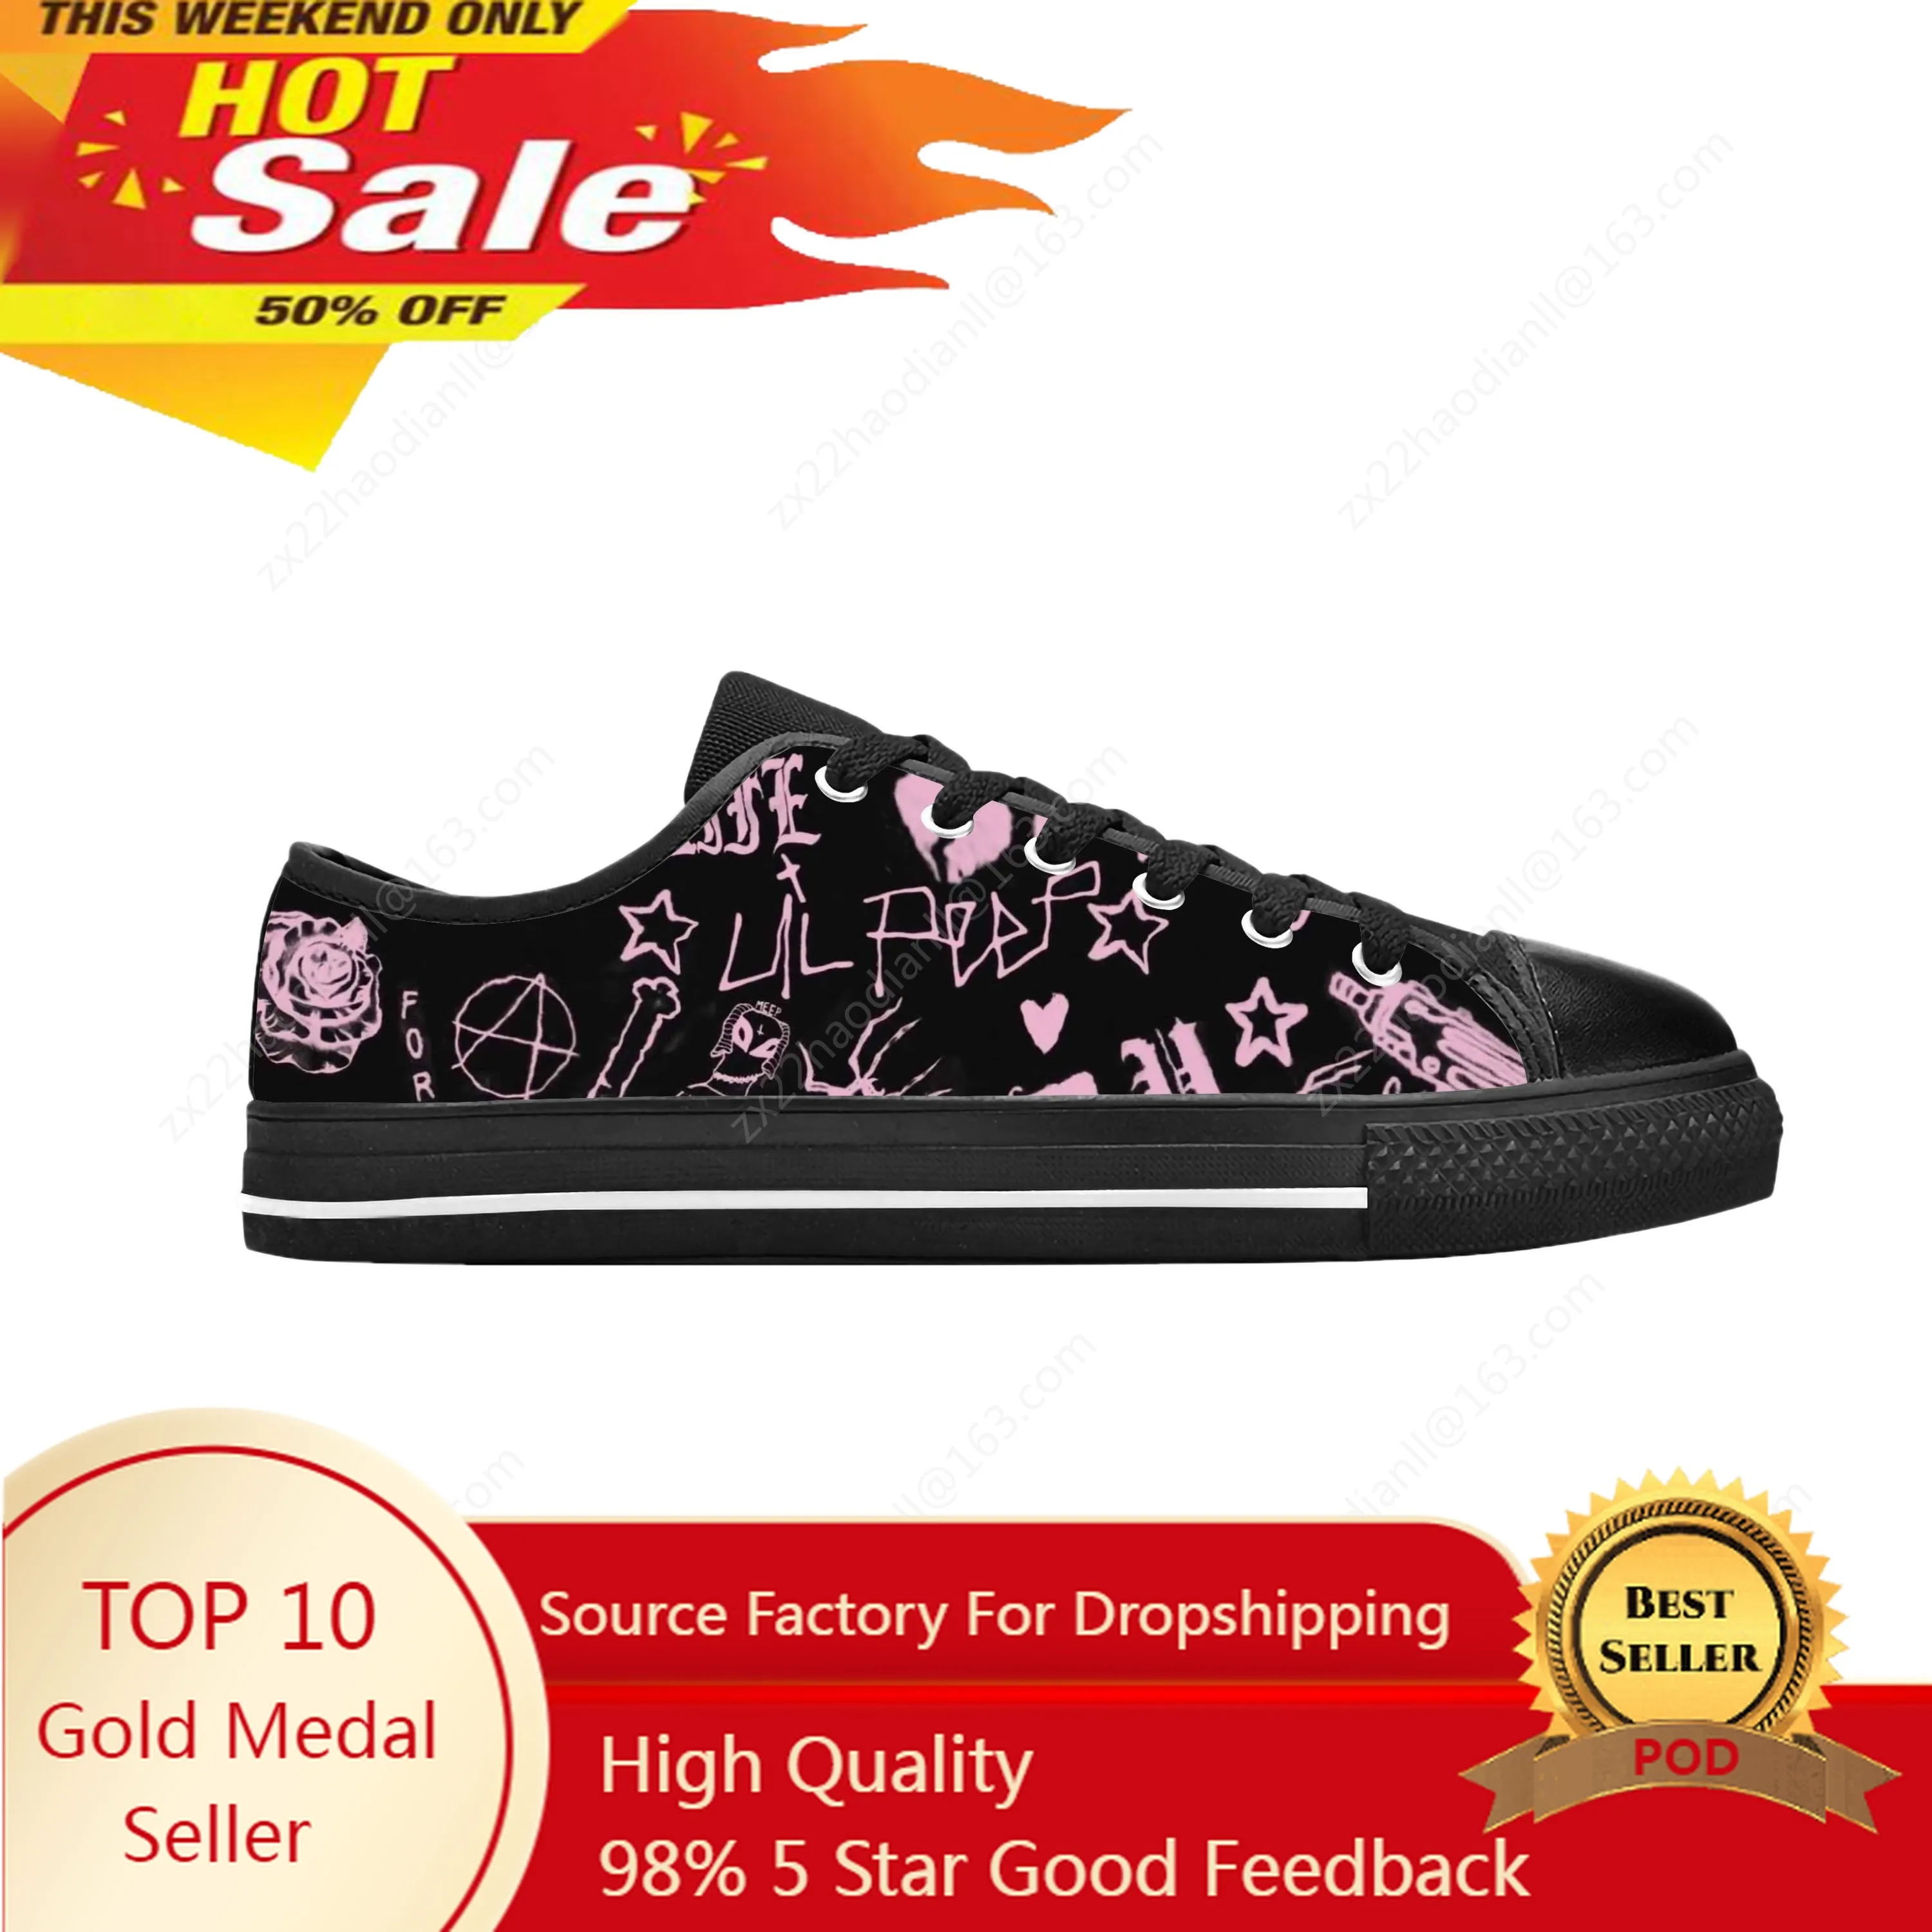 

Lil Peep Hip Hop Rap Rapper Music Singer Fashion Casual Cloth Shoes Low Top Comfortable Breathable 3D Print Men Women Sneakers